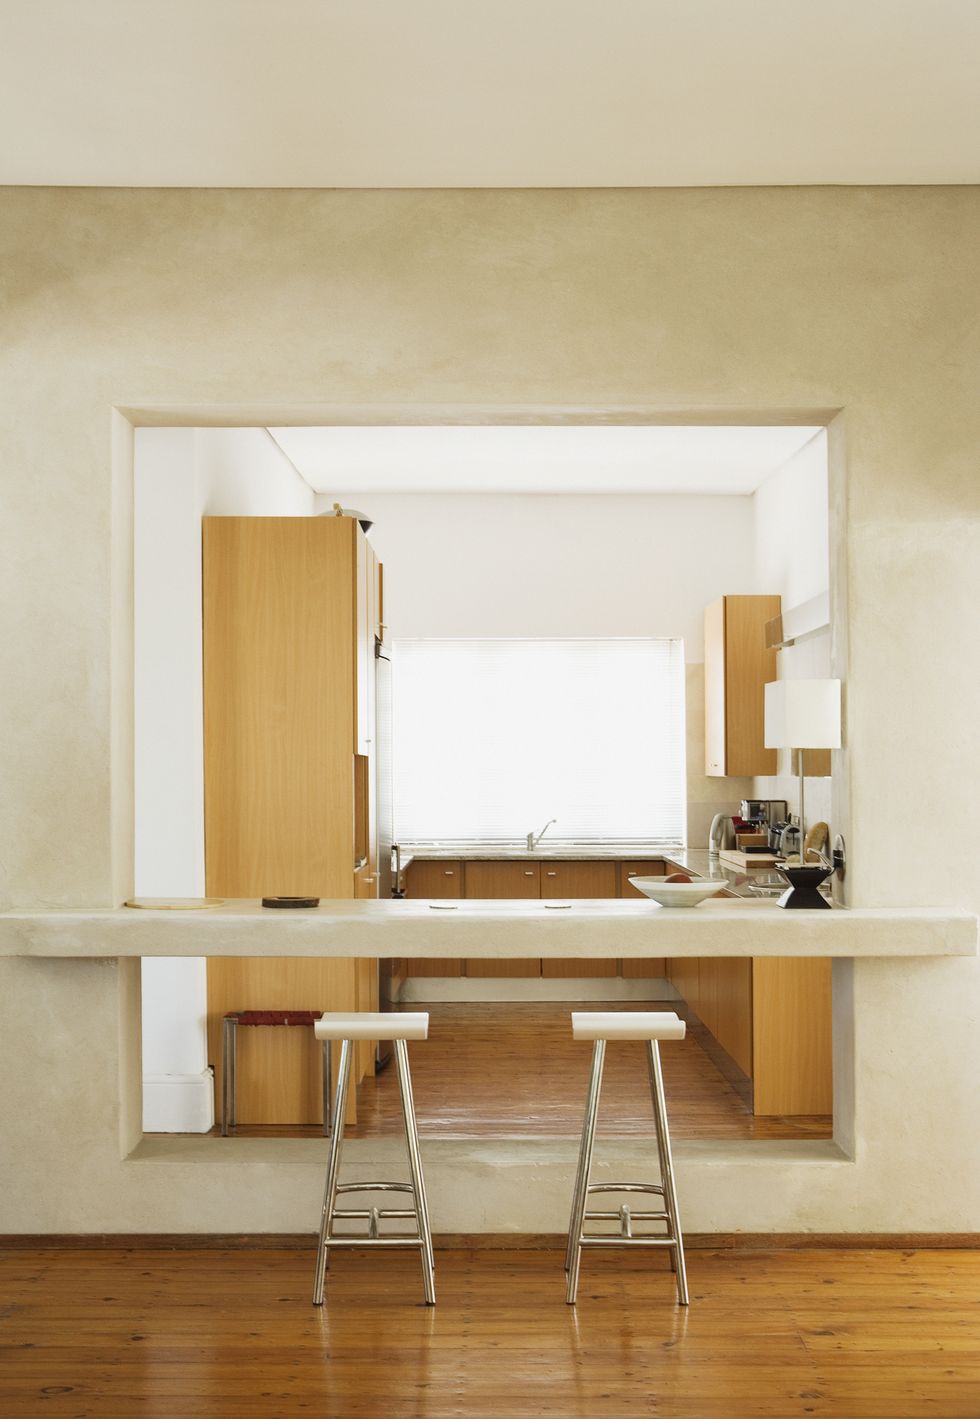 Cocina semiabierta con barra a salón - comedor - Modern - Kitchen - Other -  by Arquiox